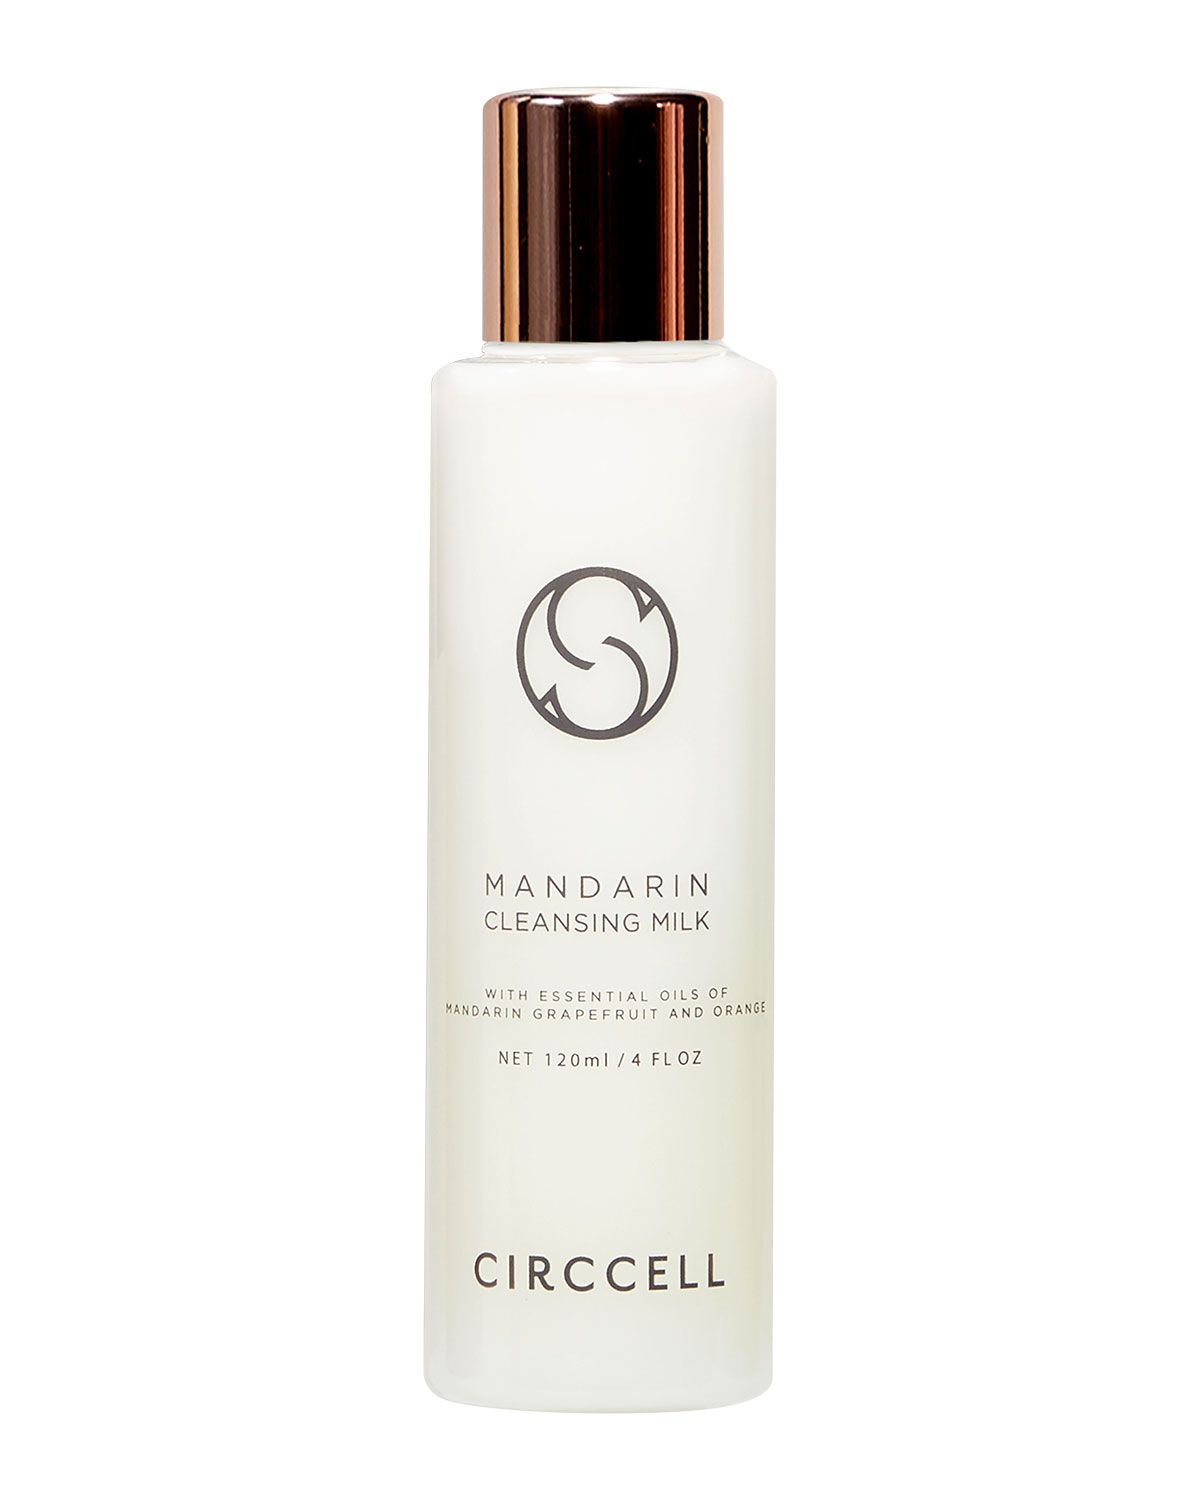 4 oz. Mandarin Cleansing Milk | Neiman Marcus